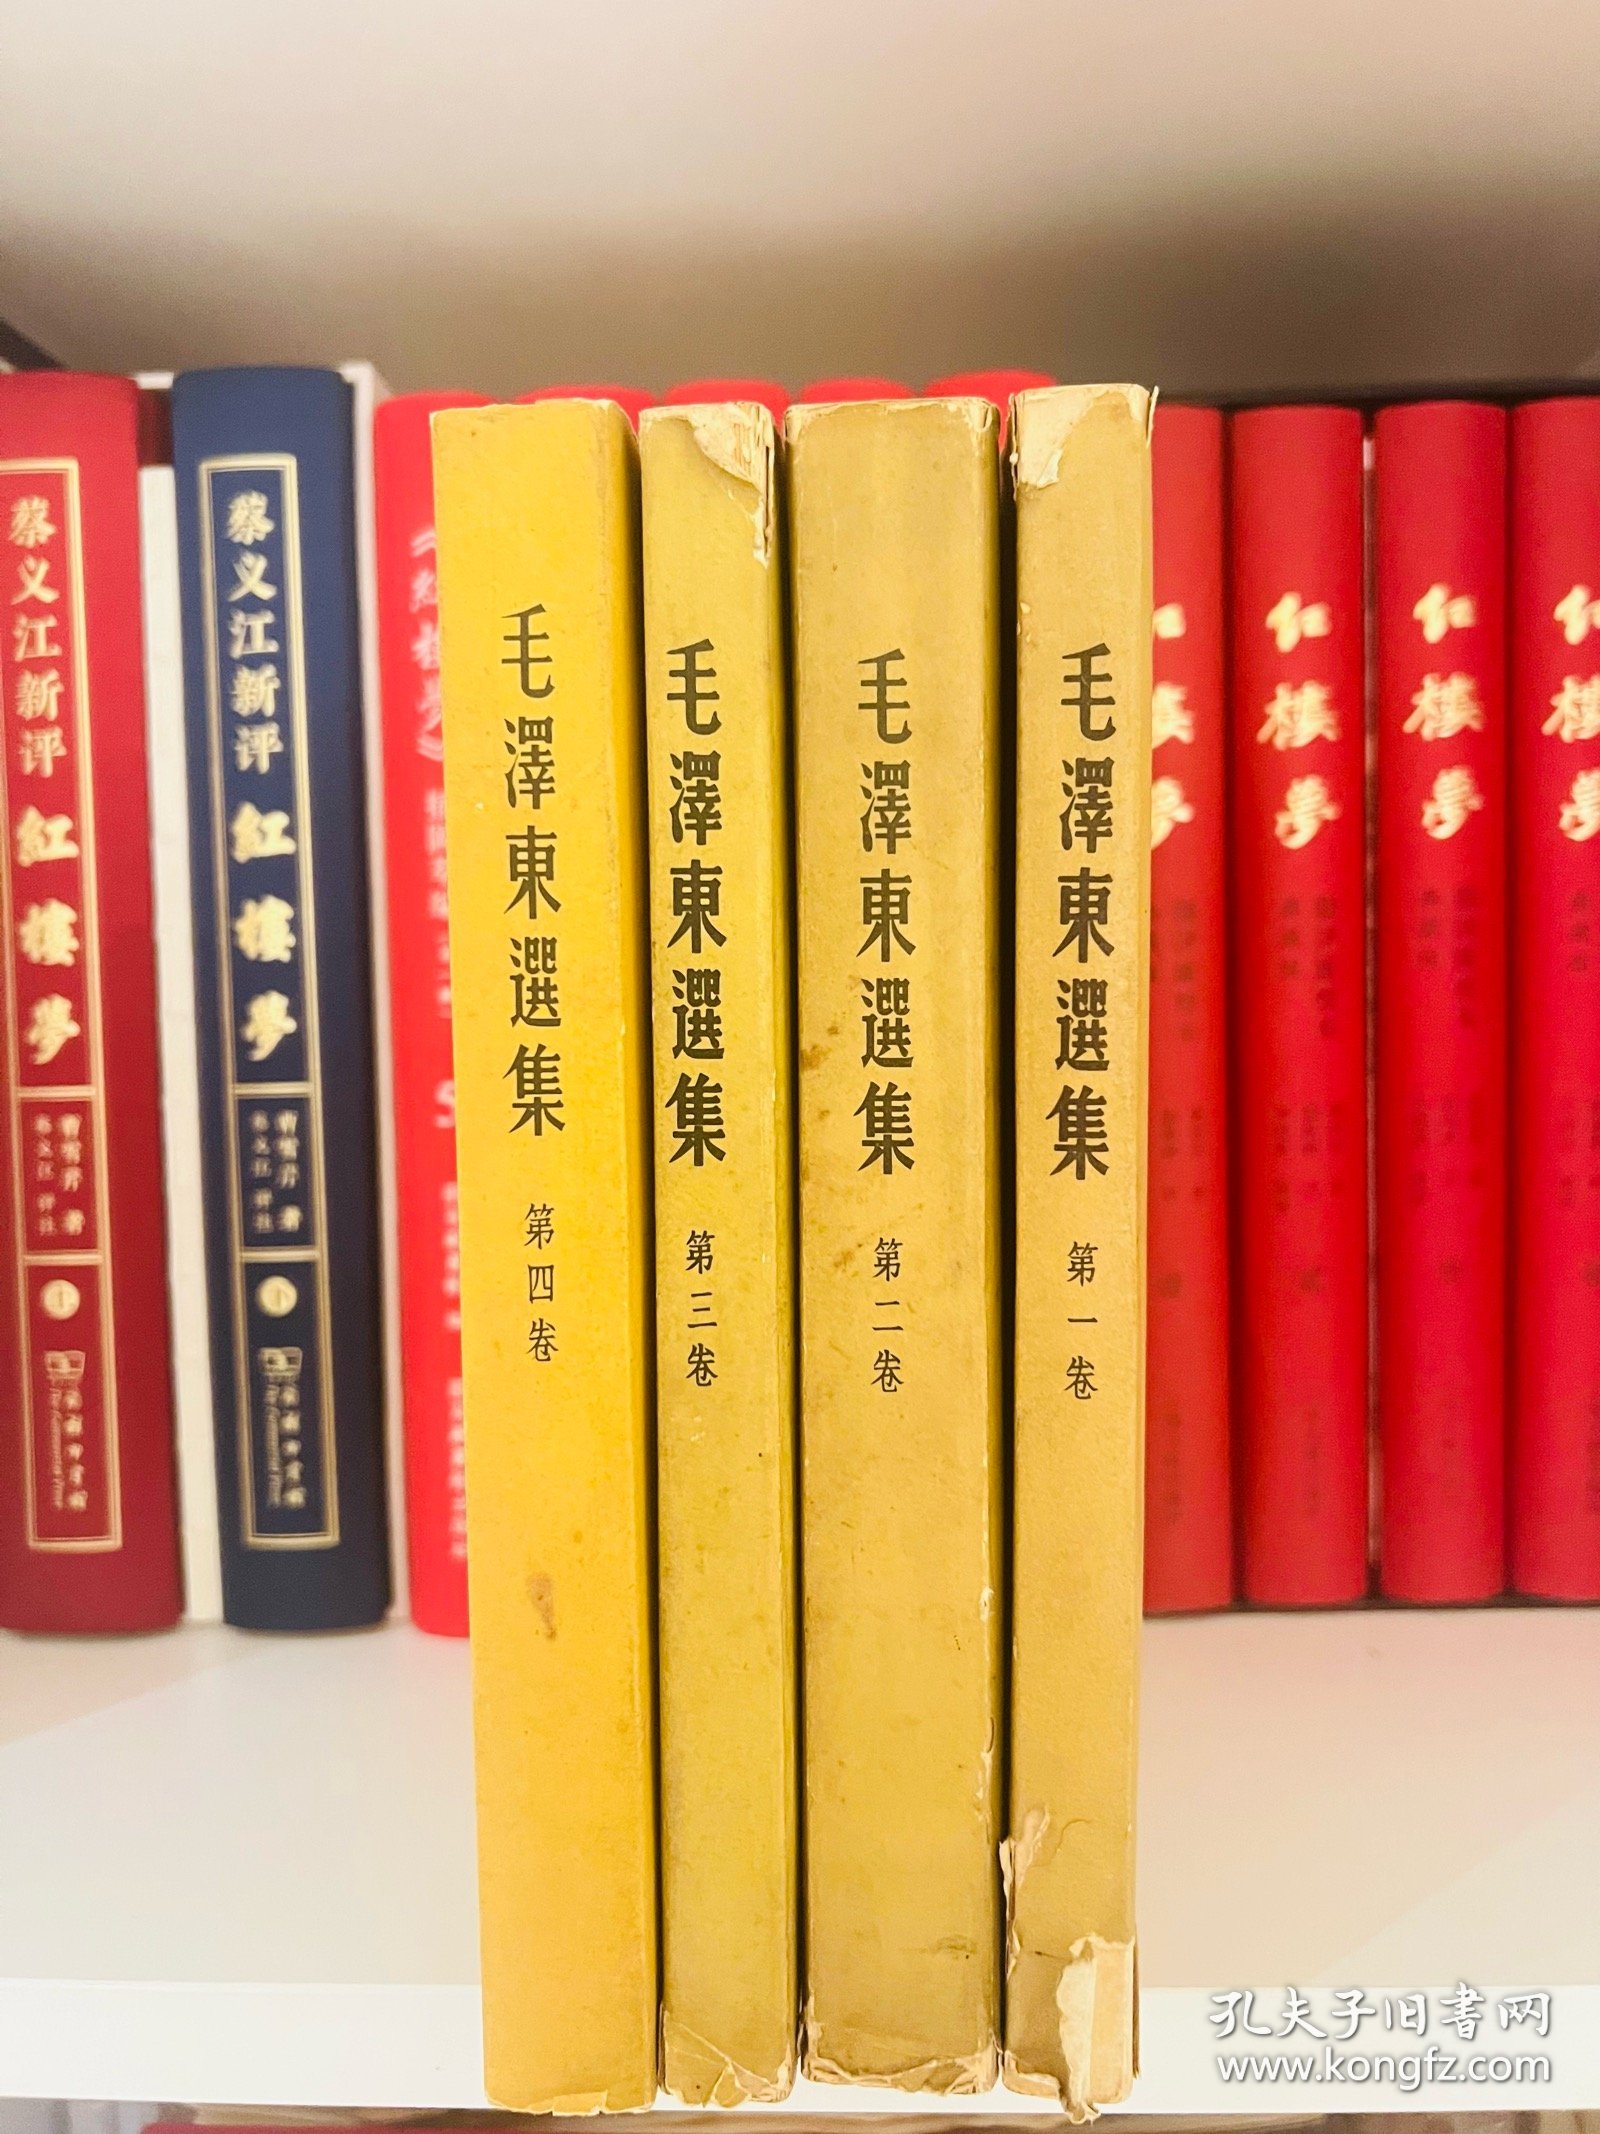 《毛泽东选集》竖排繁体1-4卷，第一卷1953年第三版、第二卷1952年一版一印、第三卷1953年一版一印、第四卷1960年一版一印